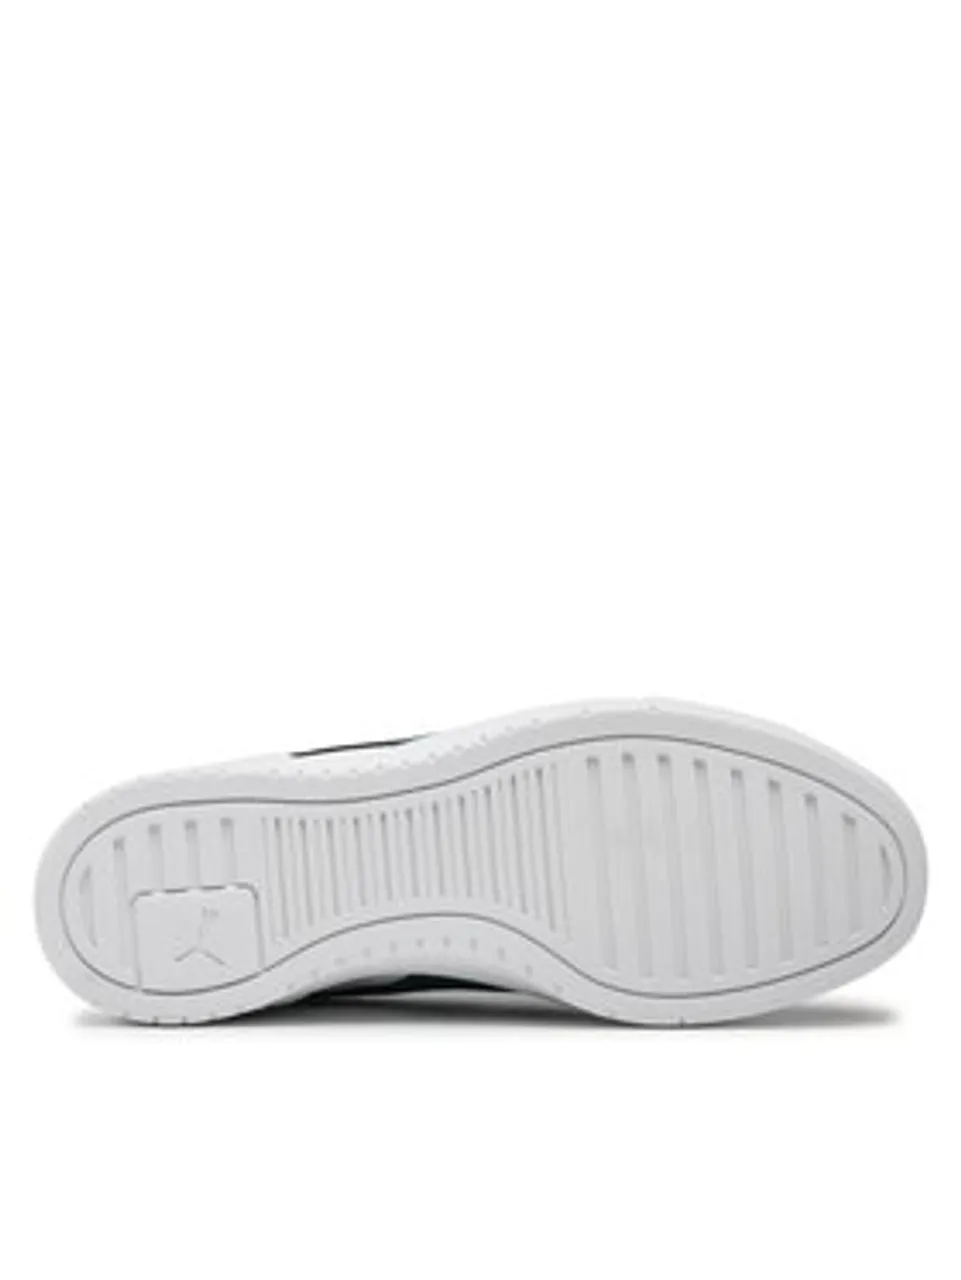 Puma Sneakers CA Pro Mid 386759 10 Weiß